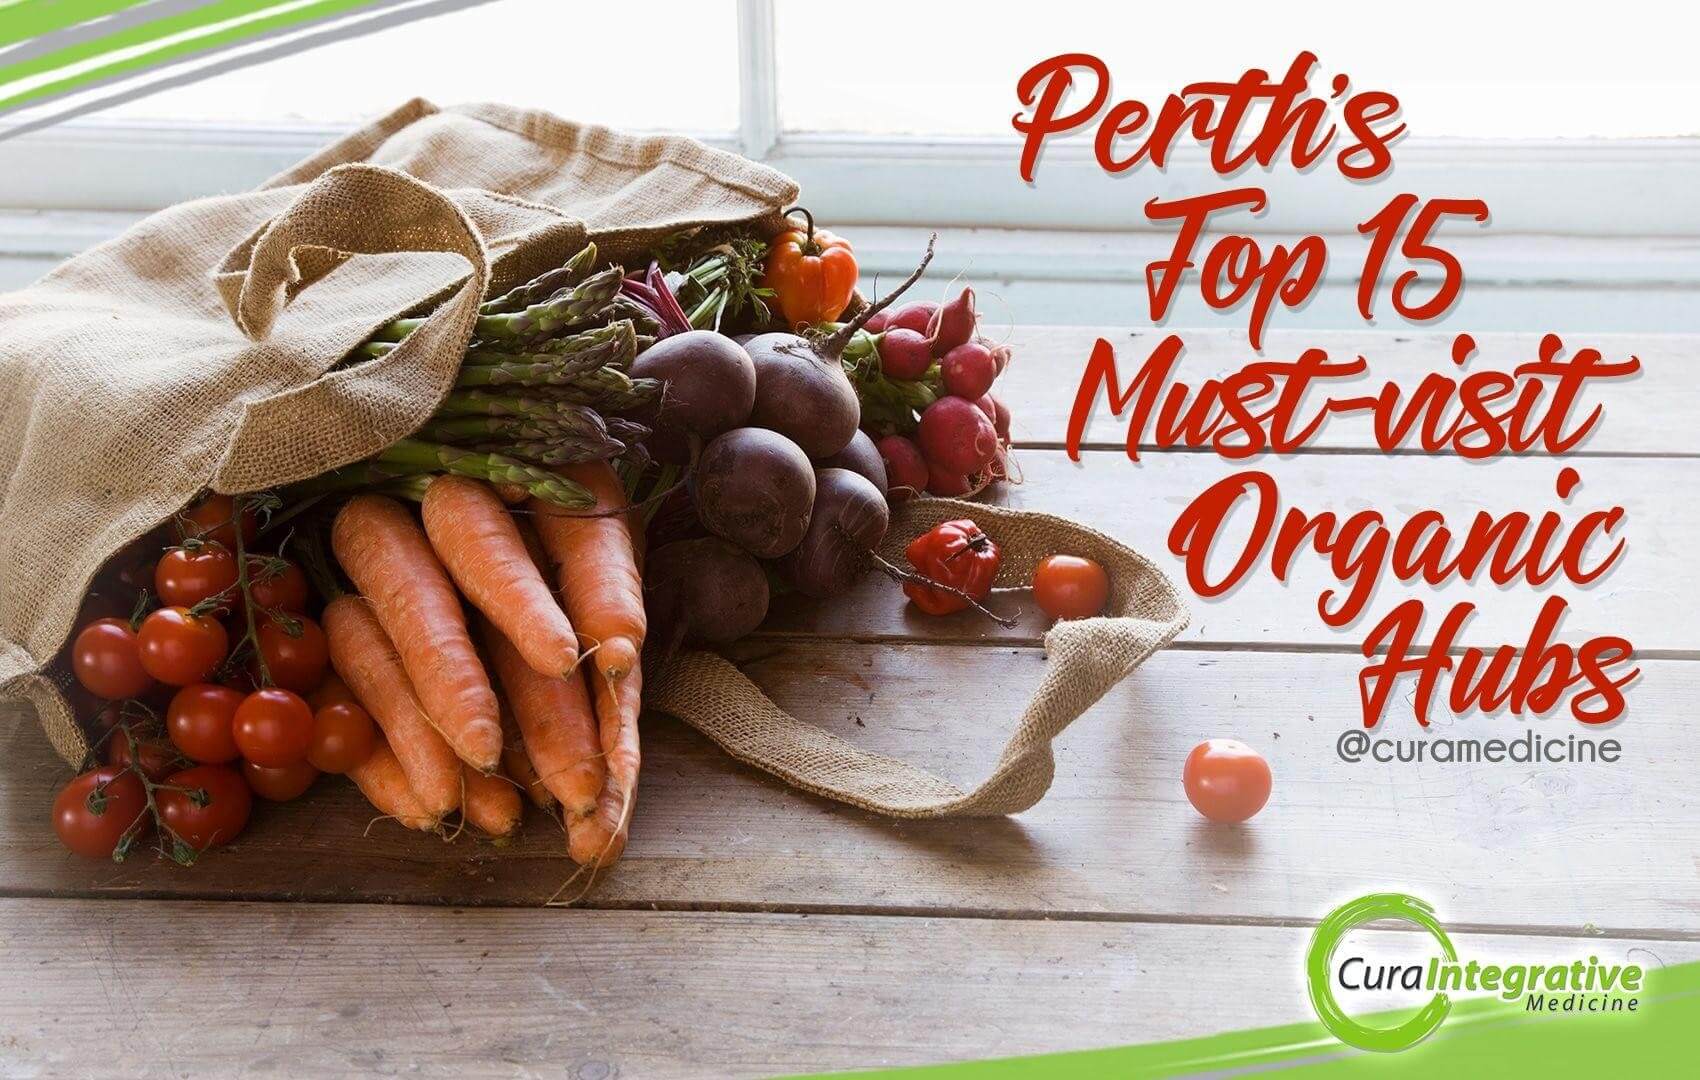 Perth’s Top 15 Must Visit Organic Hubs